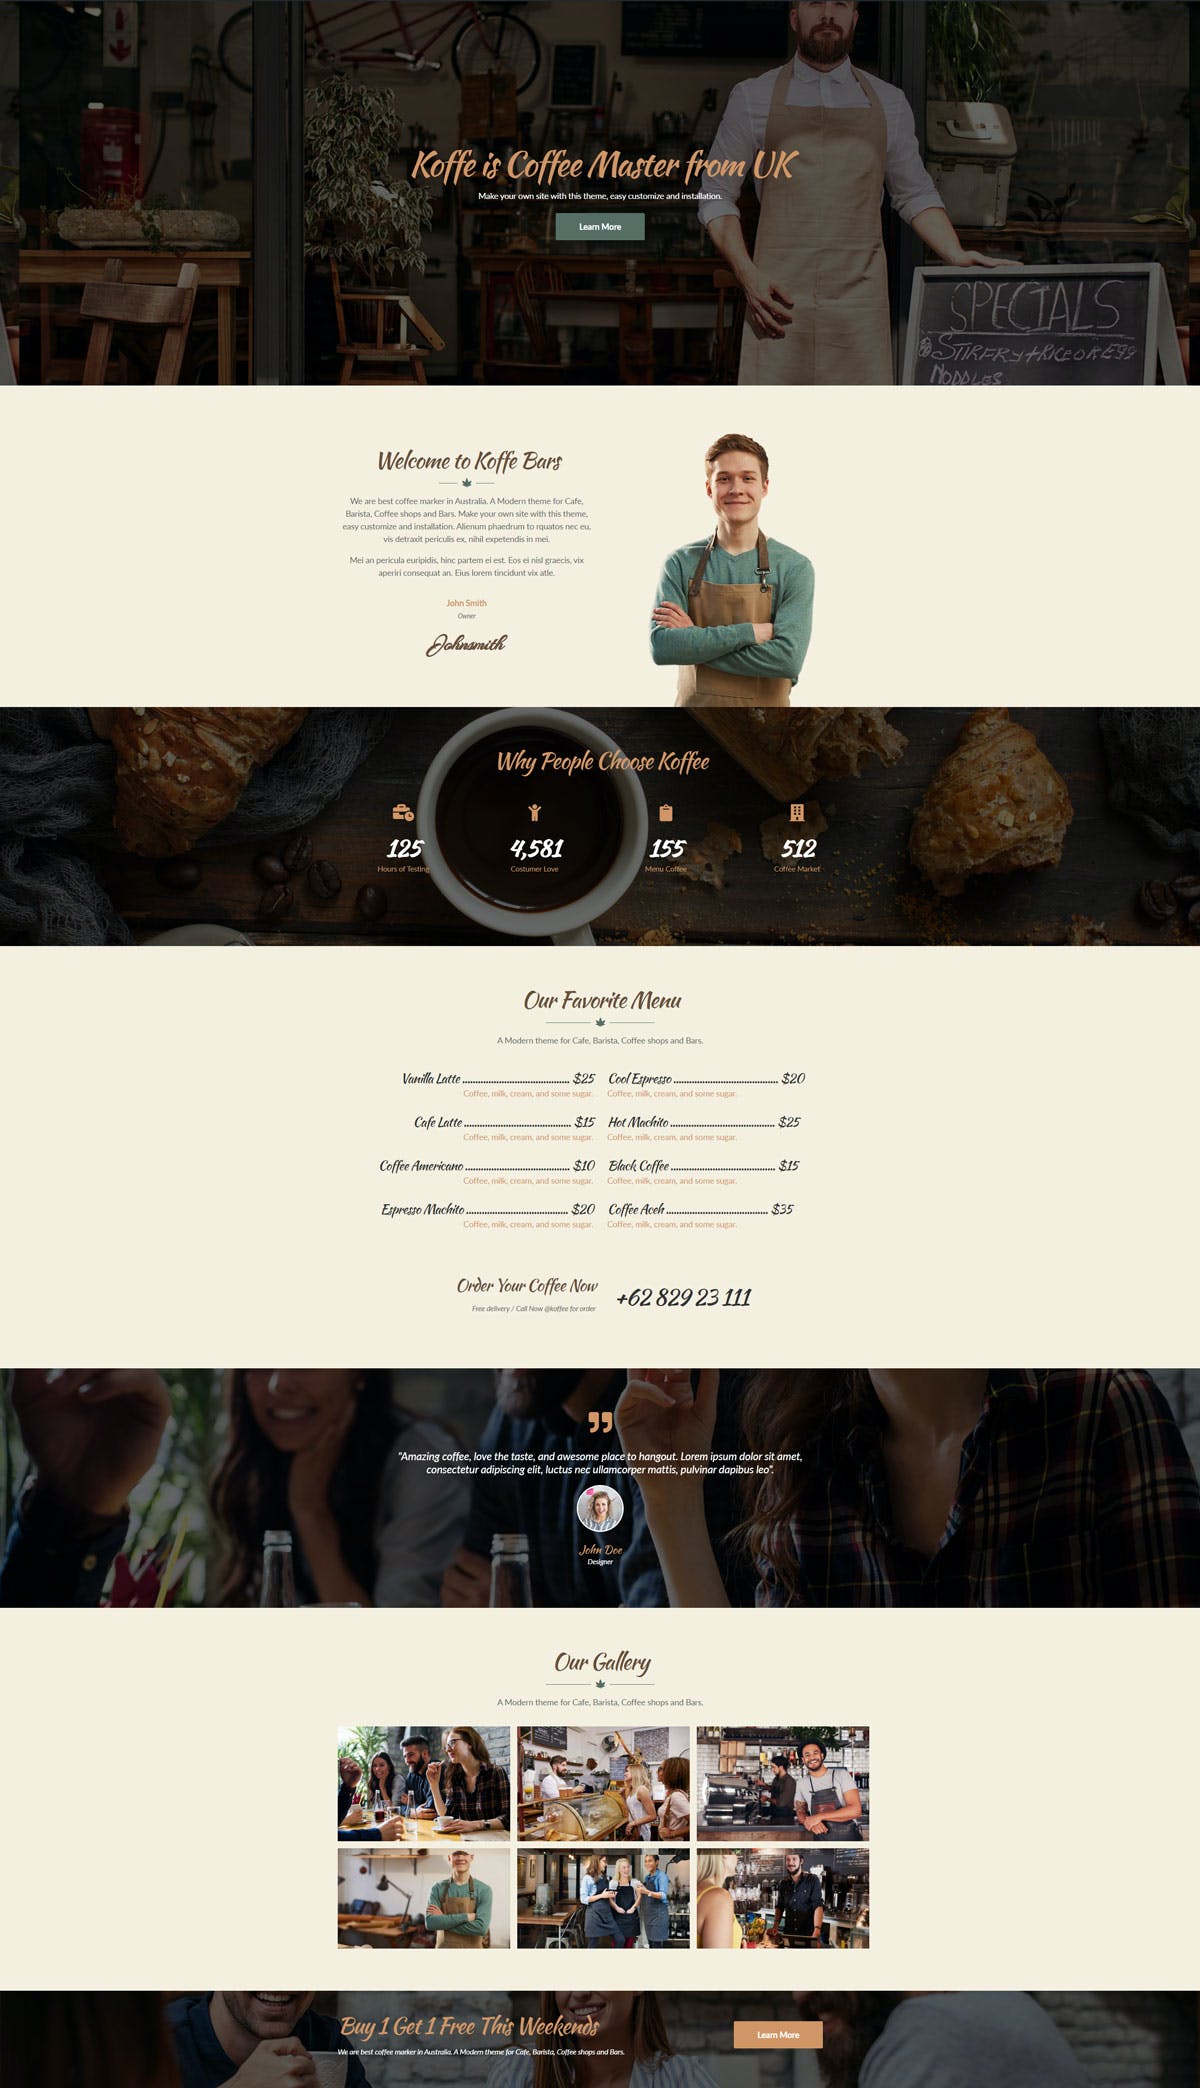 咖啡店快速便捷专业高品质咖啡元素WordPress模板工具包 Koffe – Cafe & Coffee Shop Template Kit设计素材模板